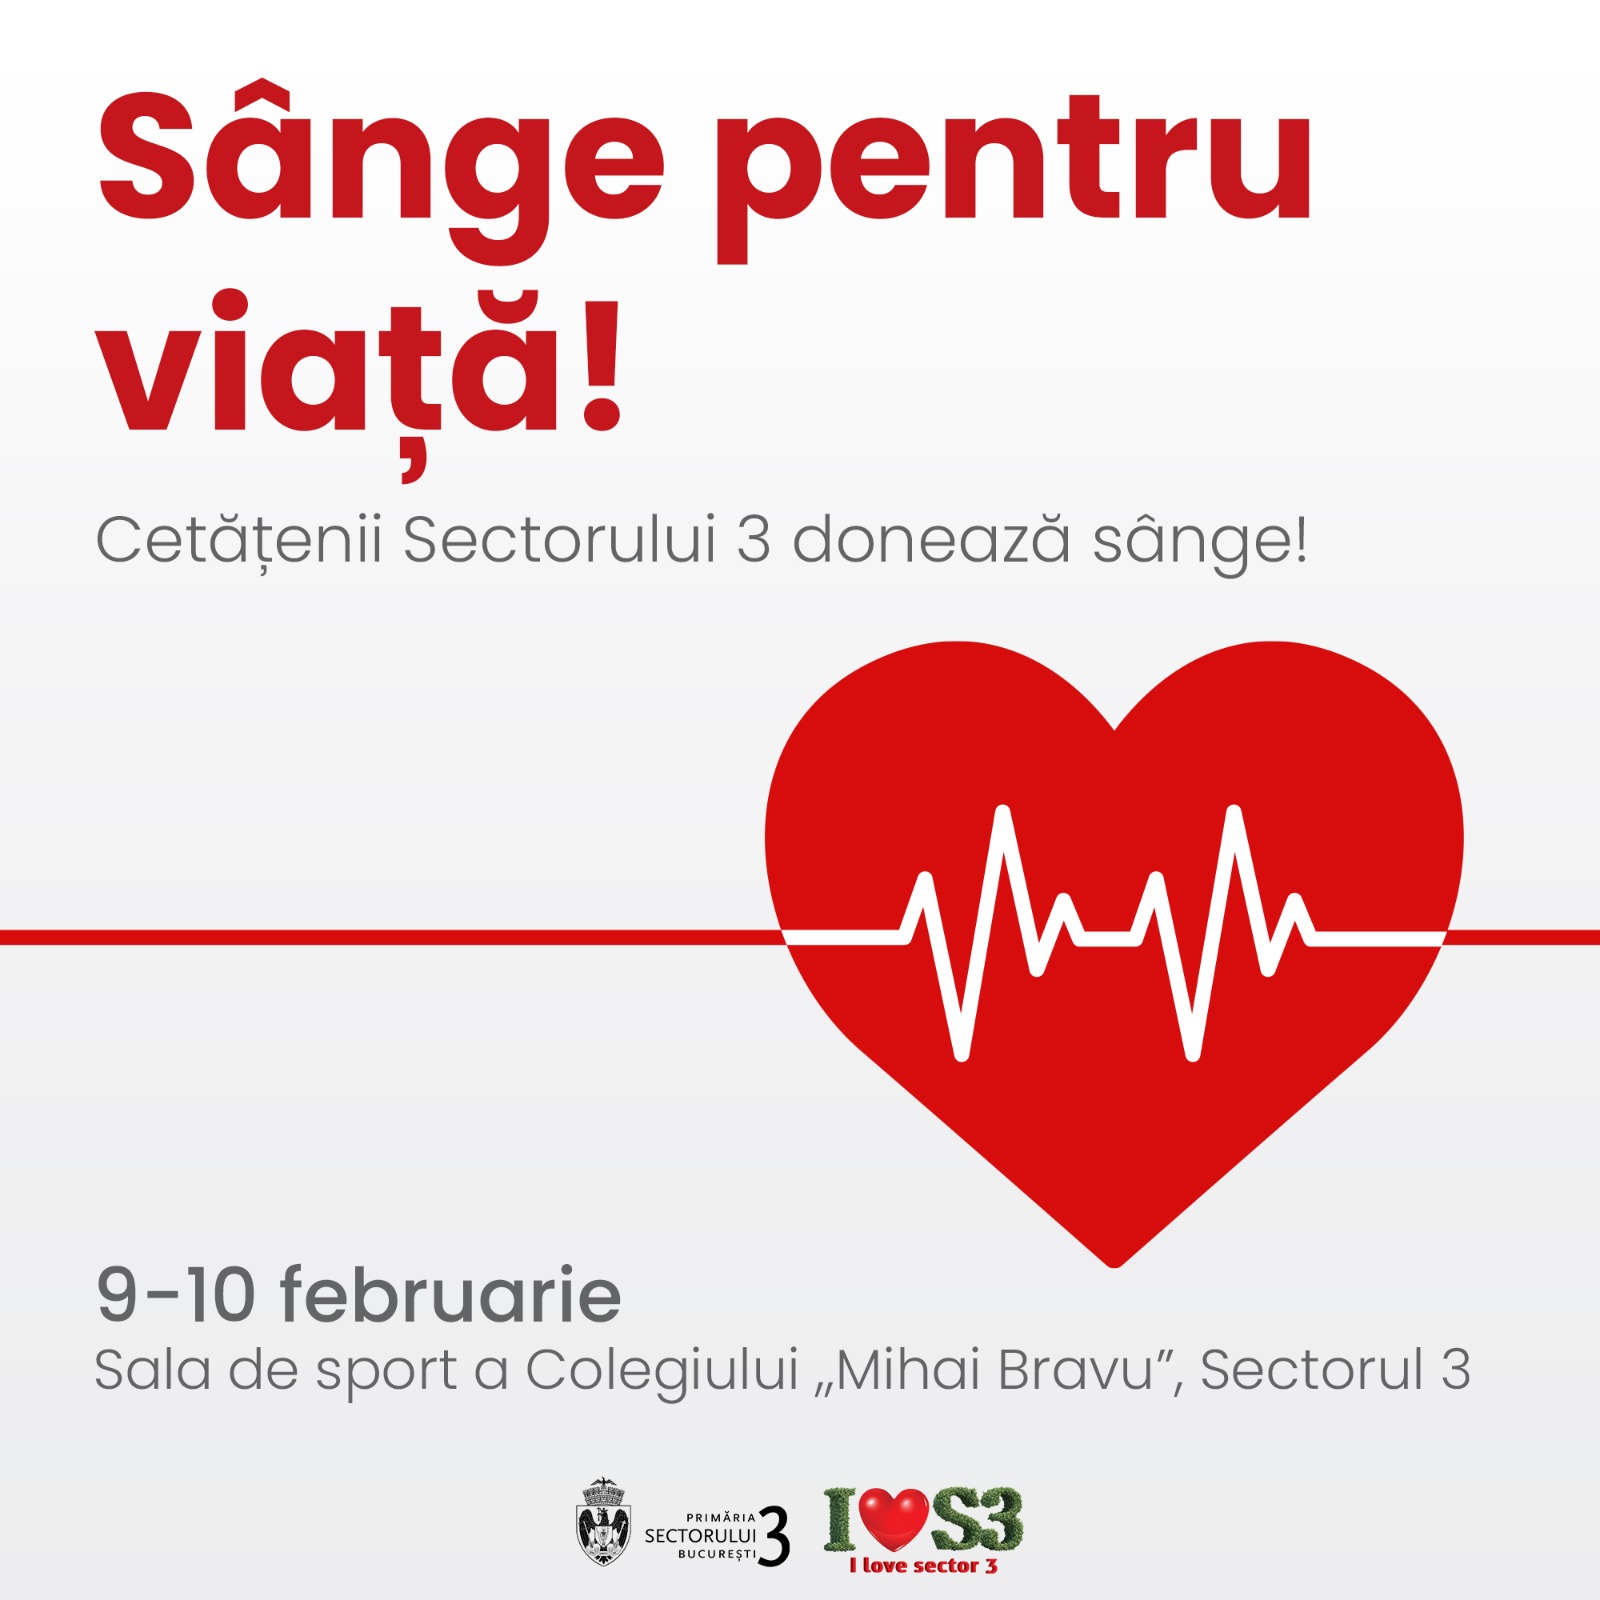 Bucureștenii pot dona sânge, în perioada 9-10 februarie, la centrul amenajat de Primăria Sectorului 3